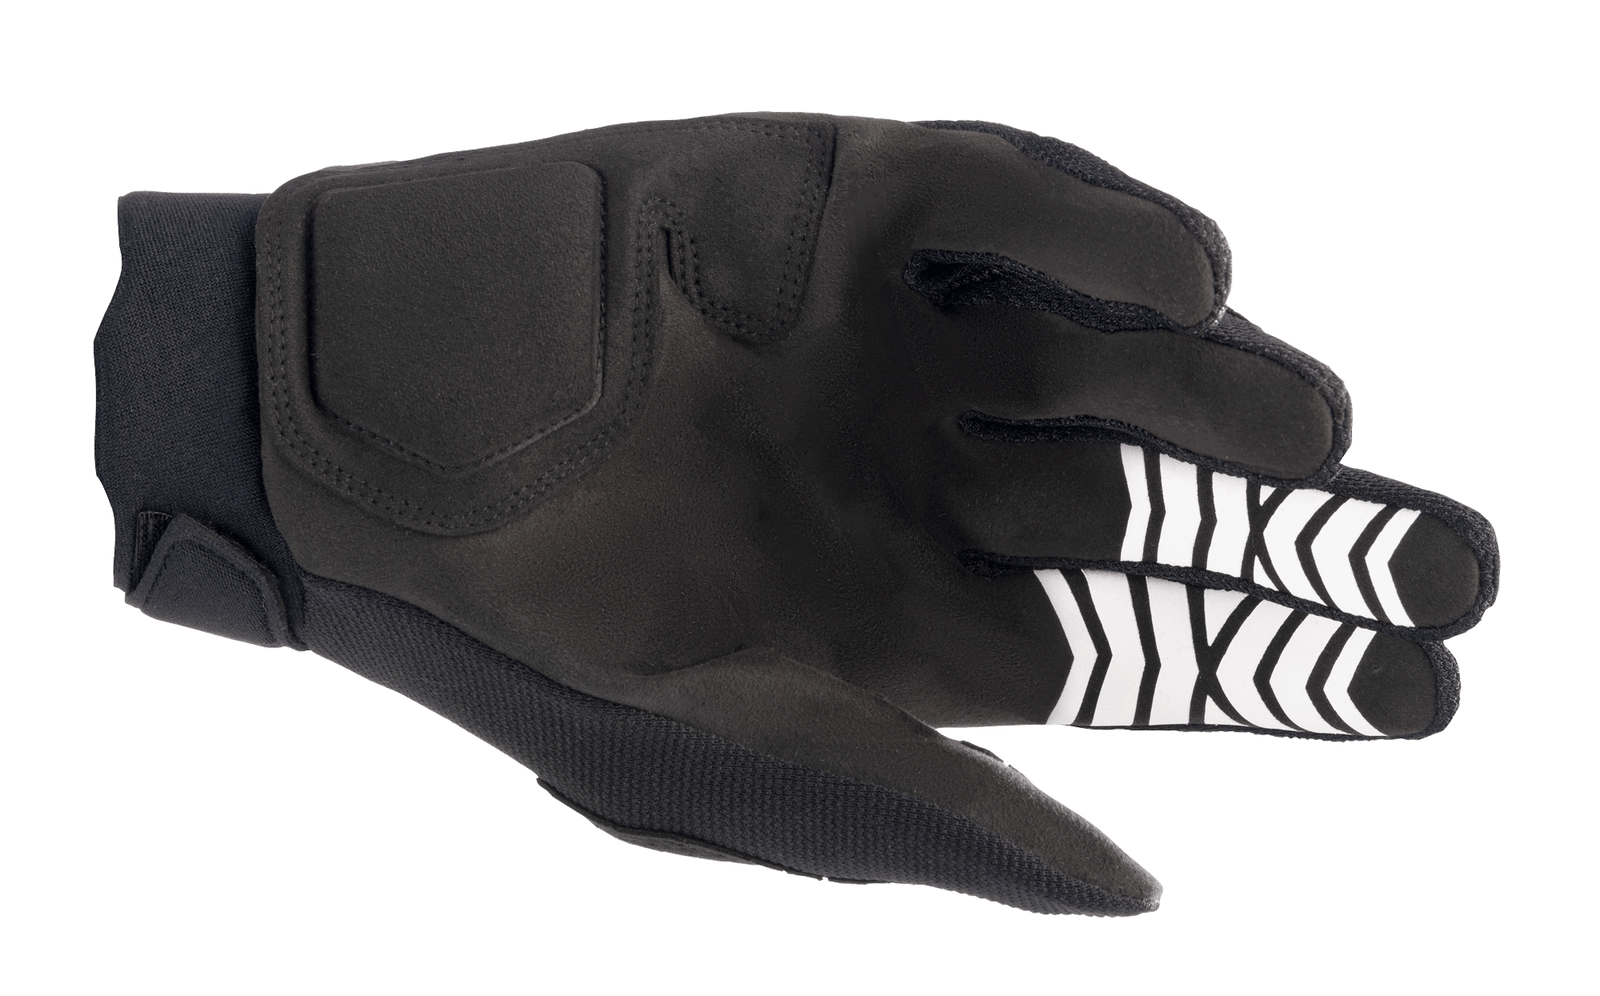 Full Bore Xt Gloves